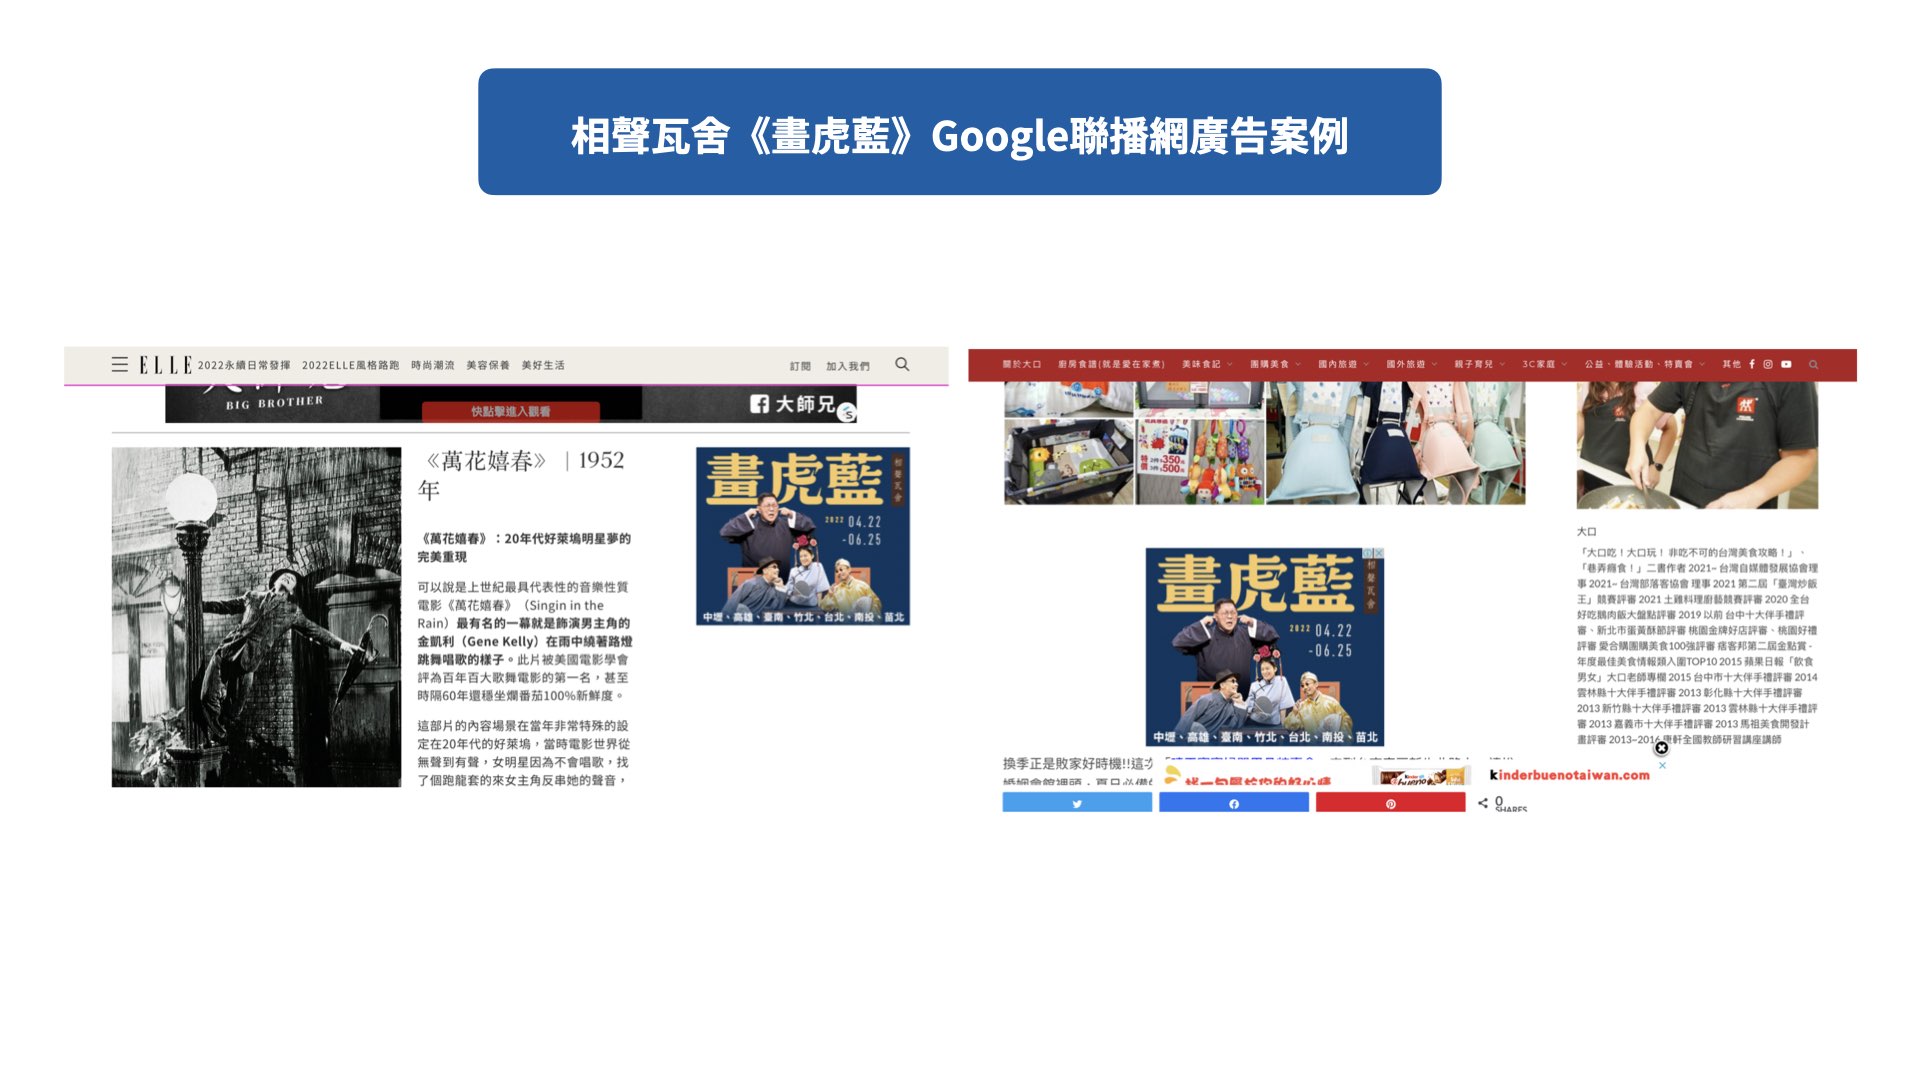 相聲瓦舍《畫虎藍》Google聯播網廣告案例